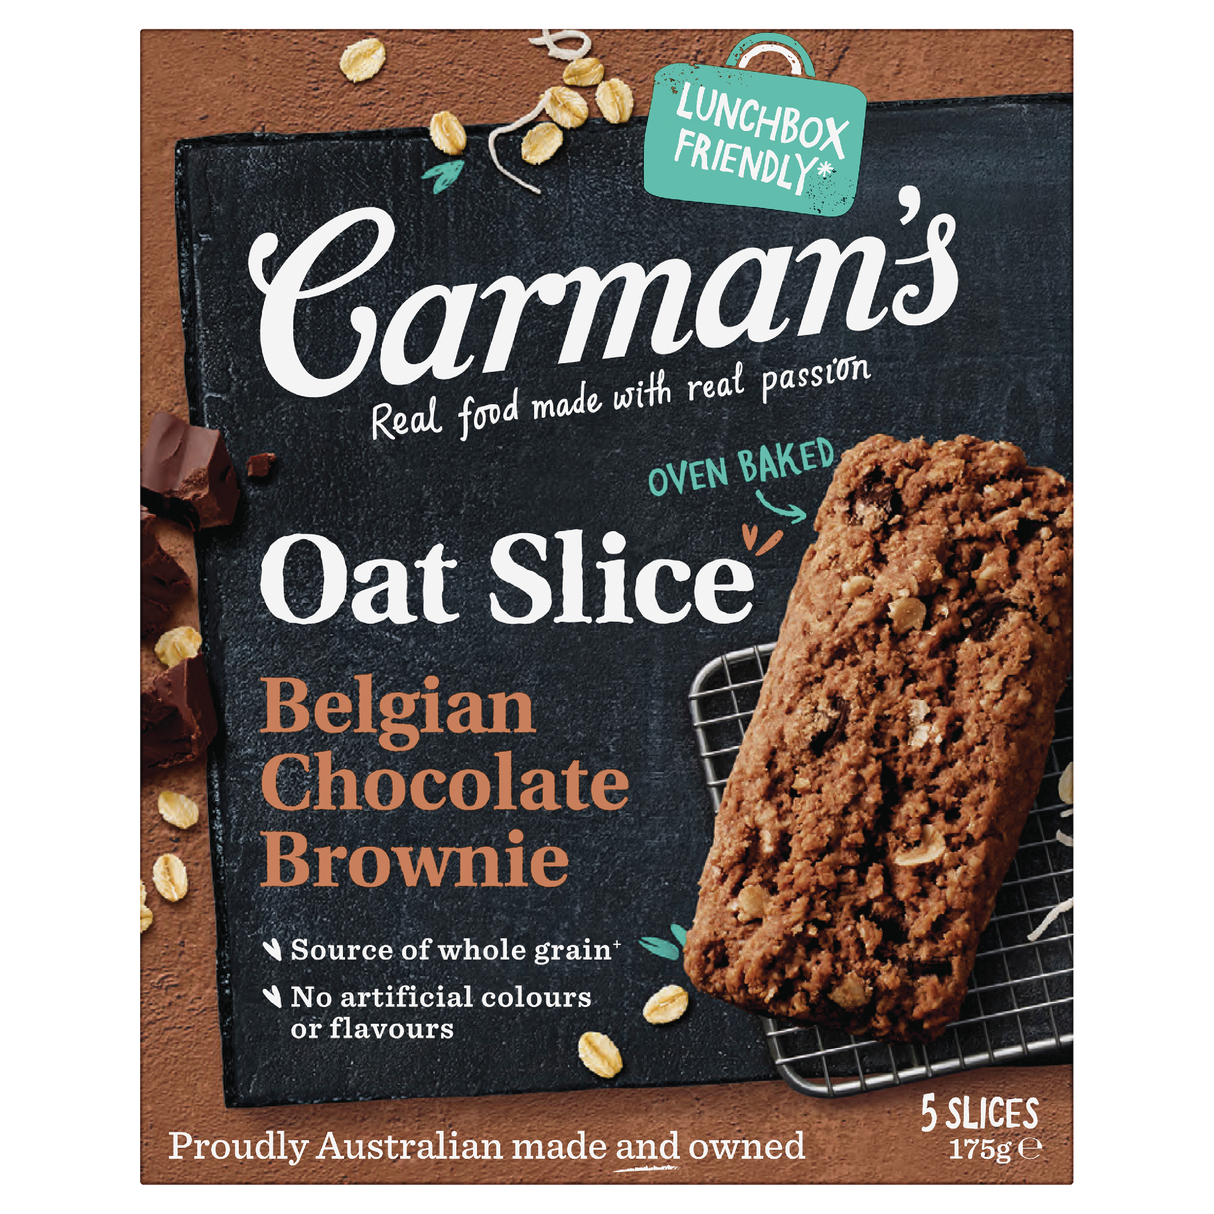 Carman's Oat Slice Belgian Chocolate Brownie 5 Pack